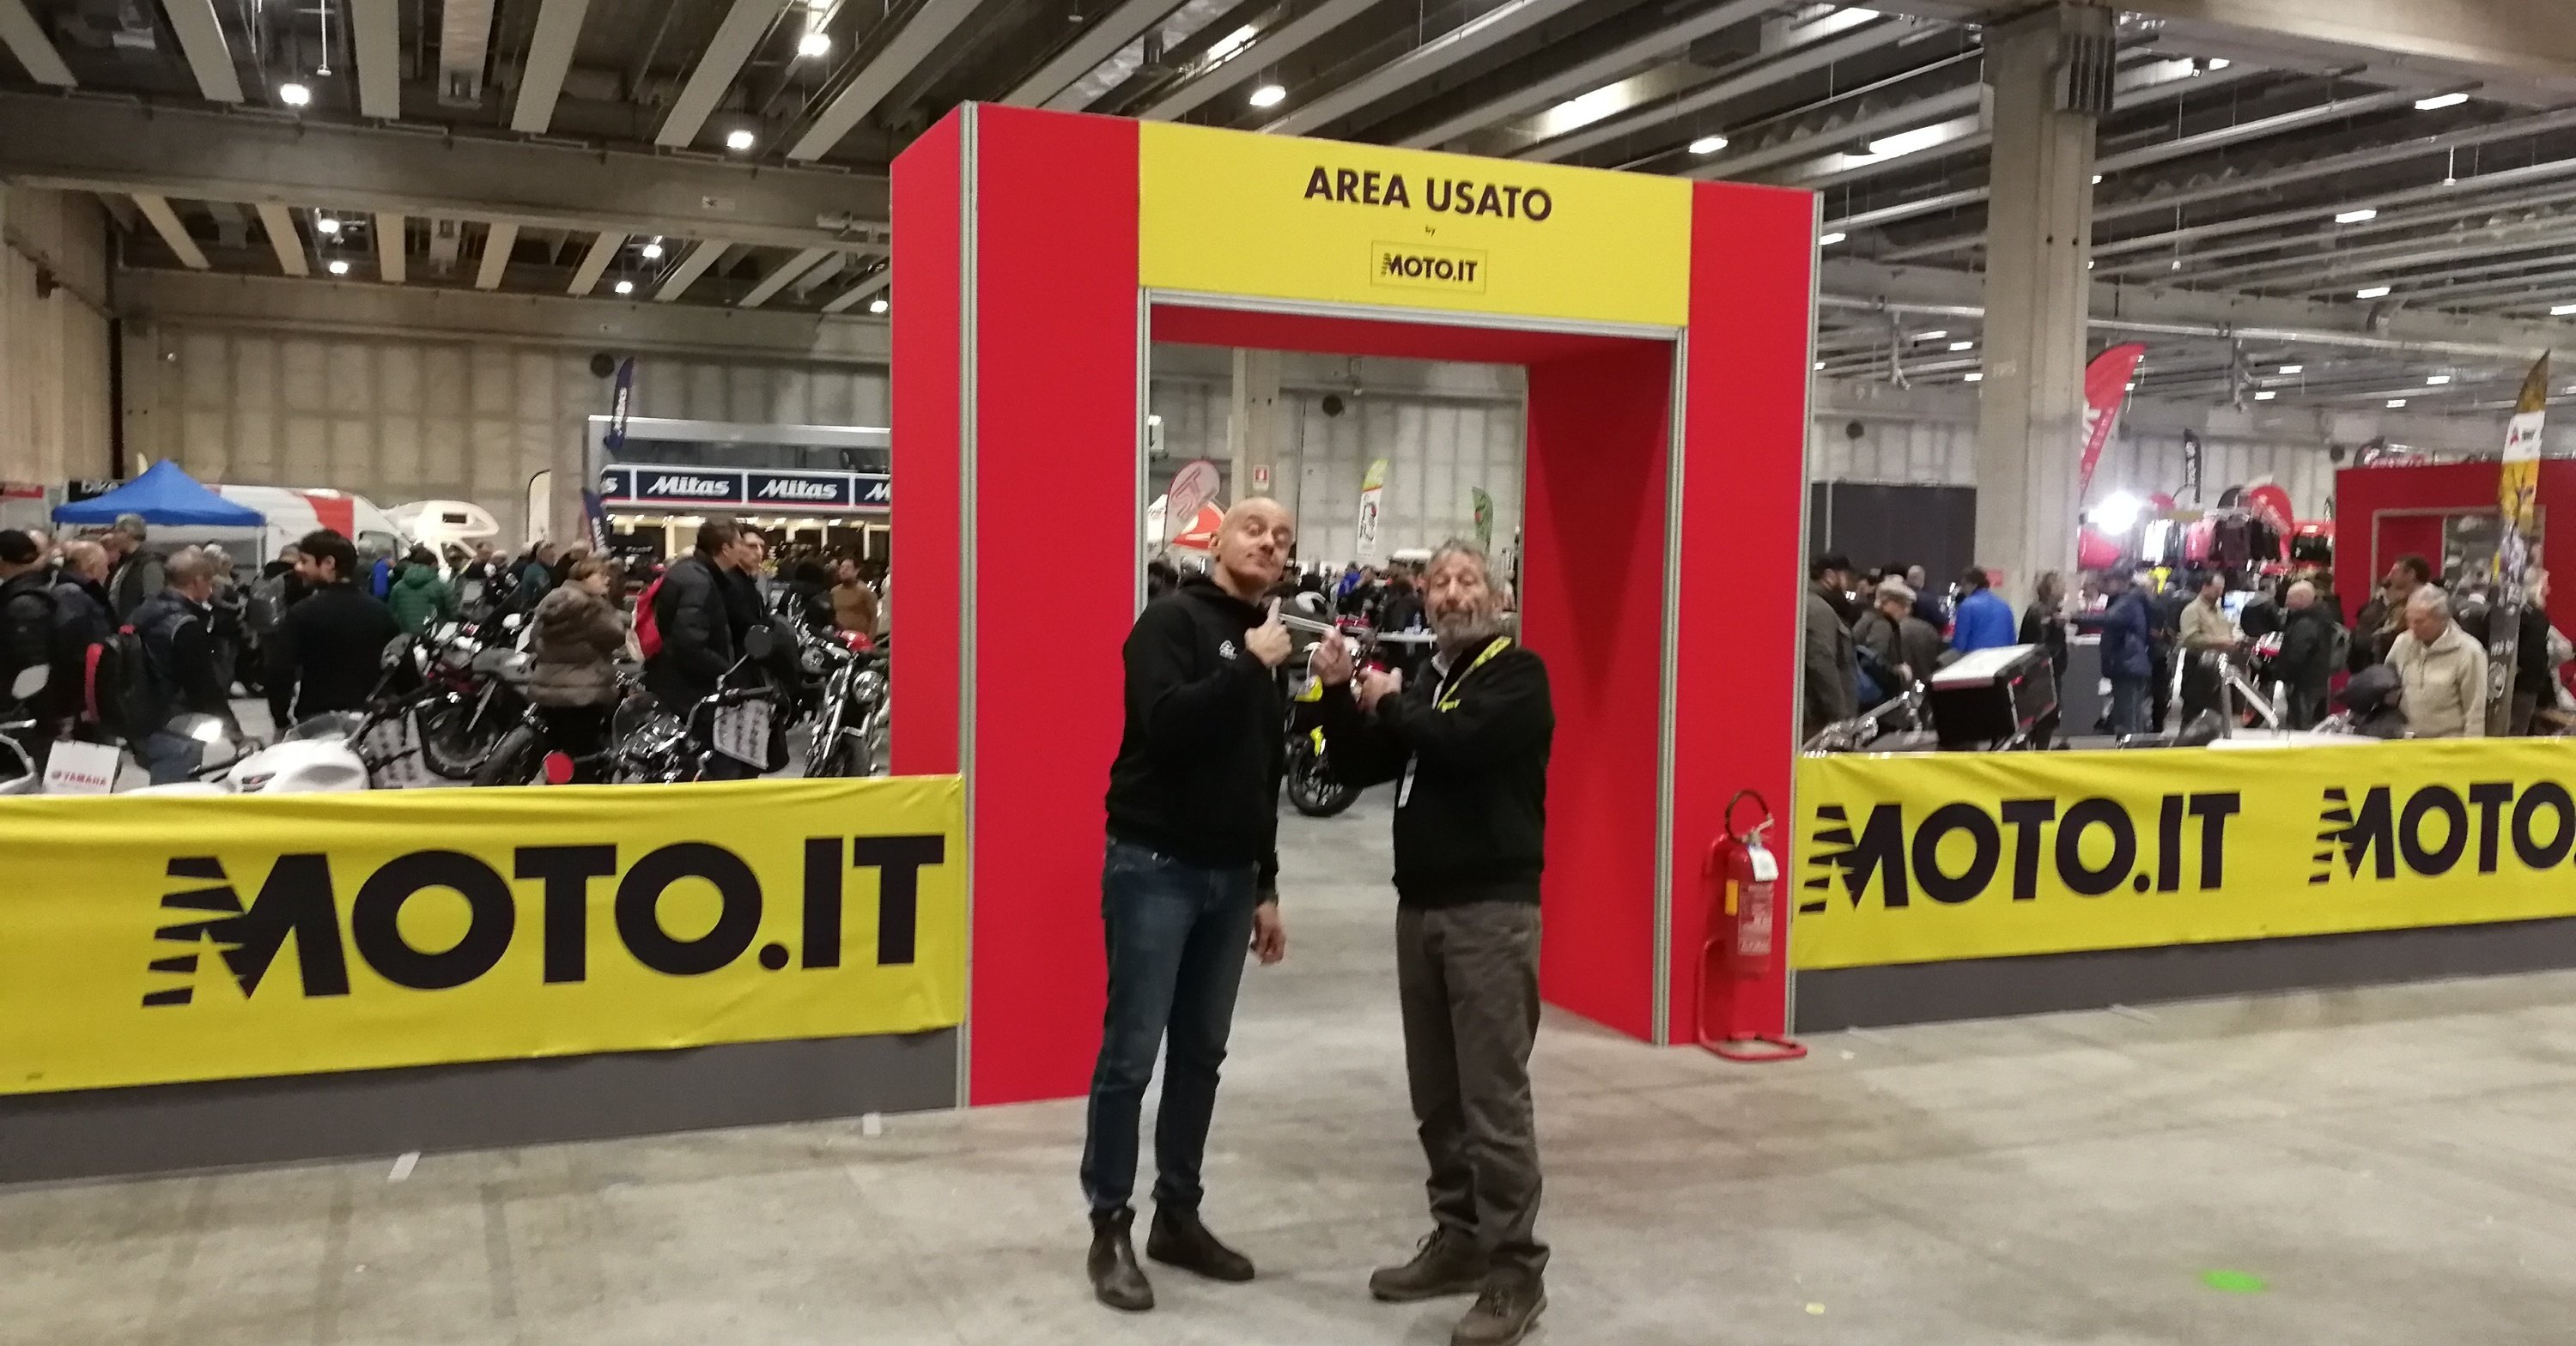 Motor Bike Expo a Verona: Moto.it ti aspetta! Il programma